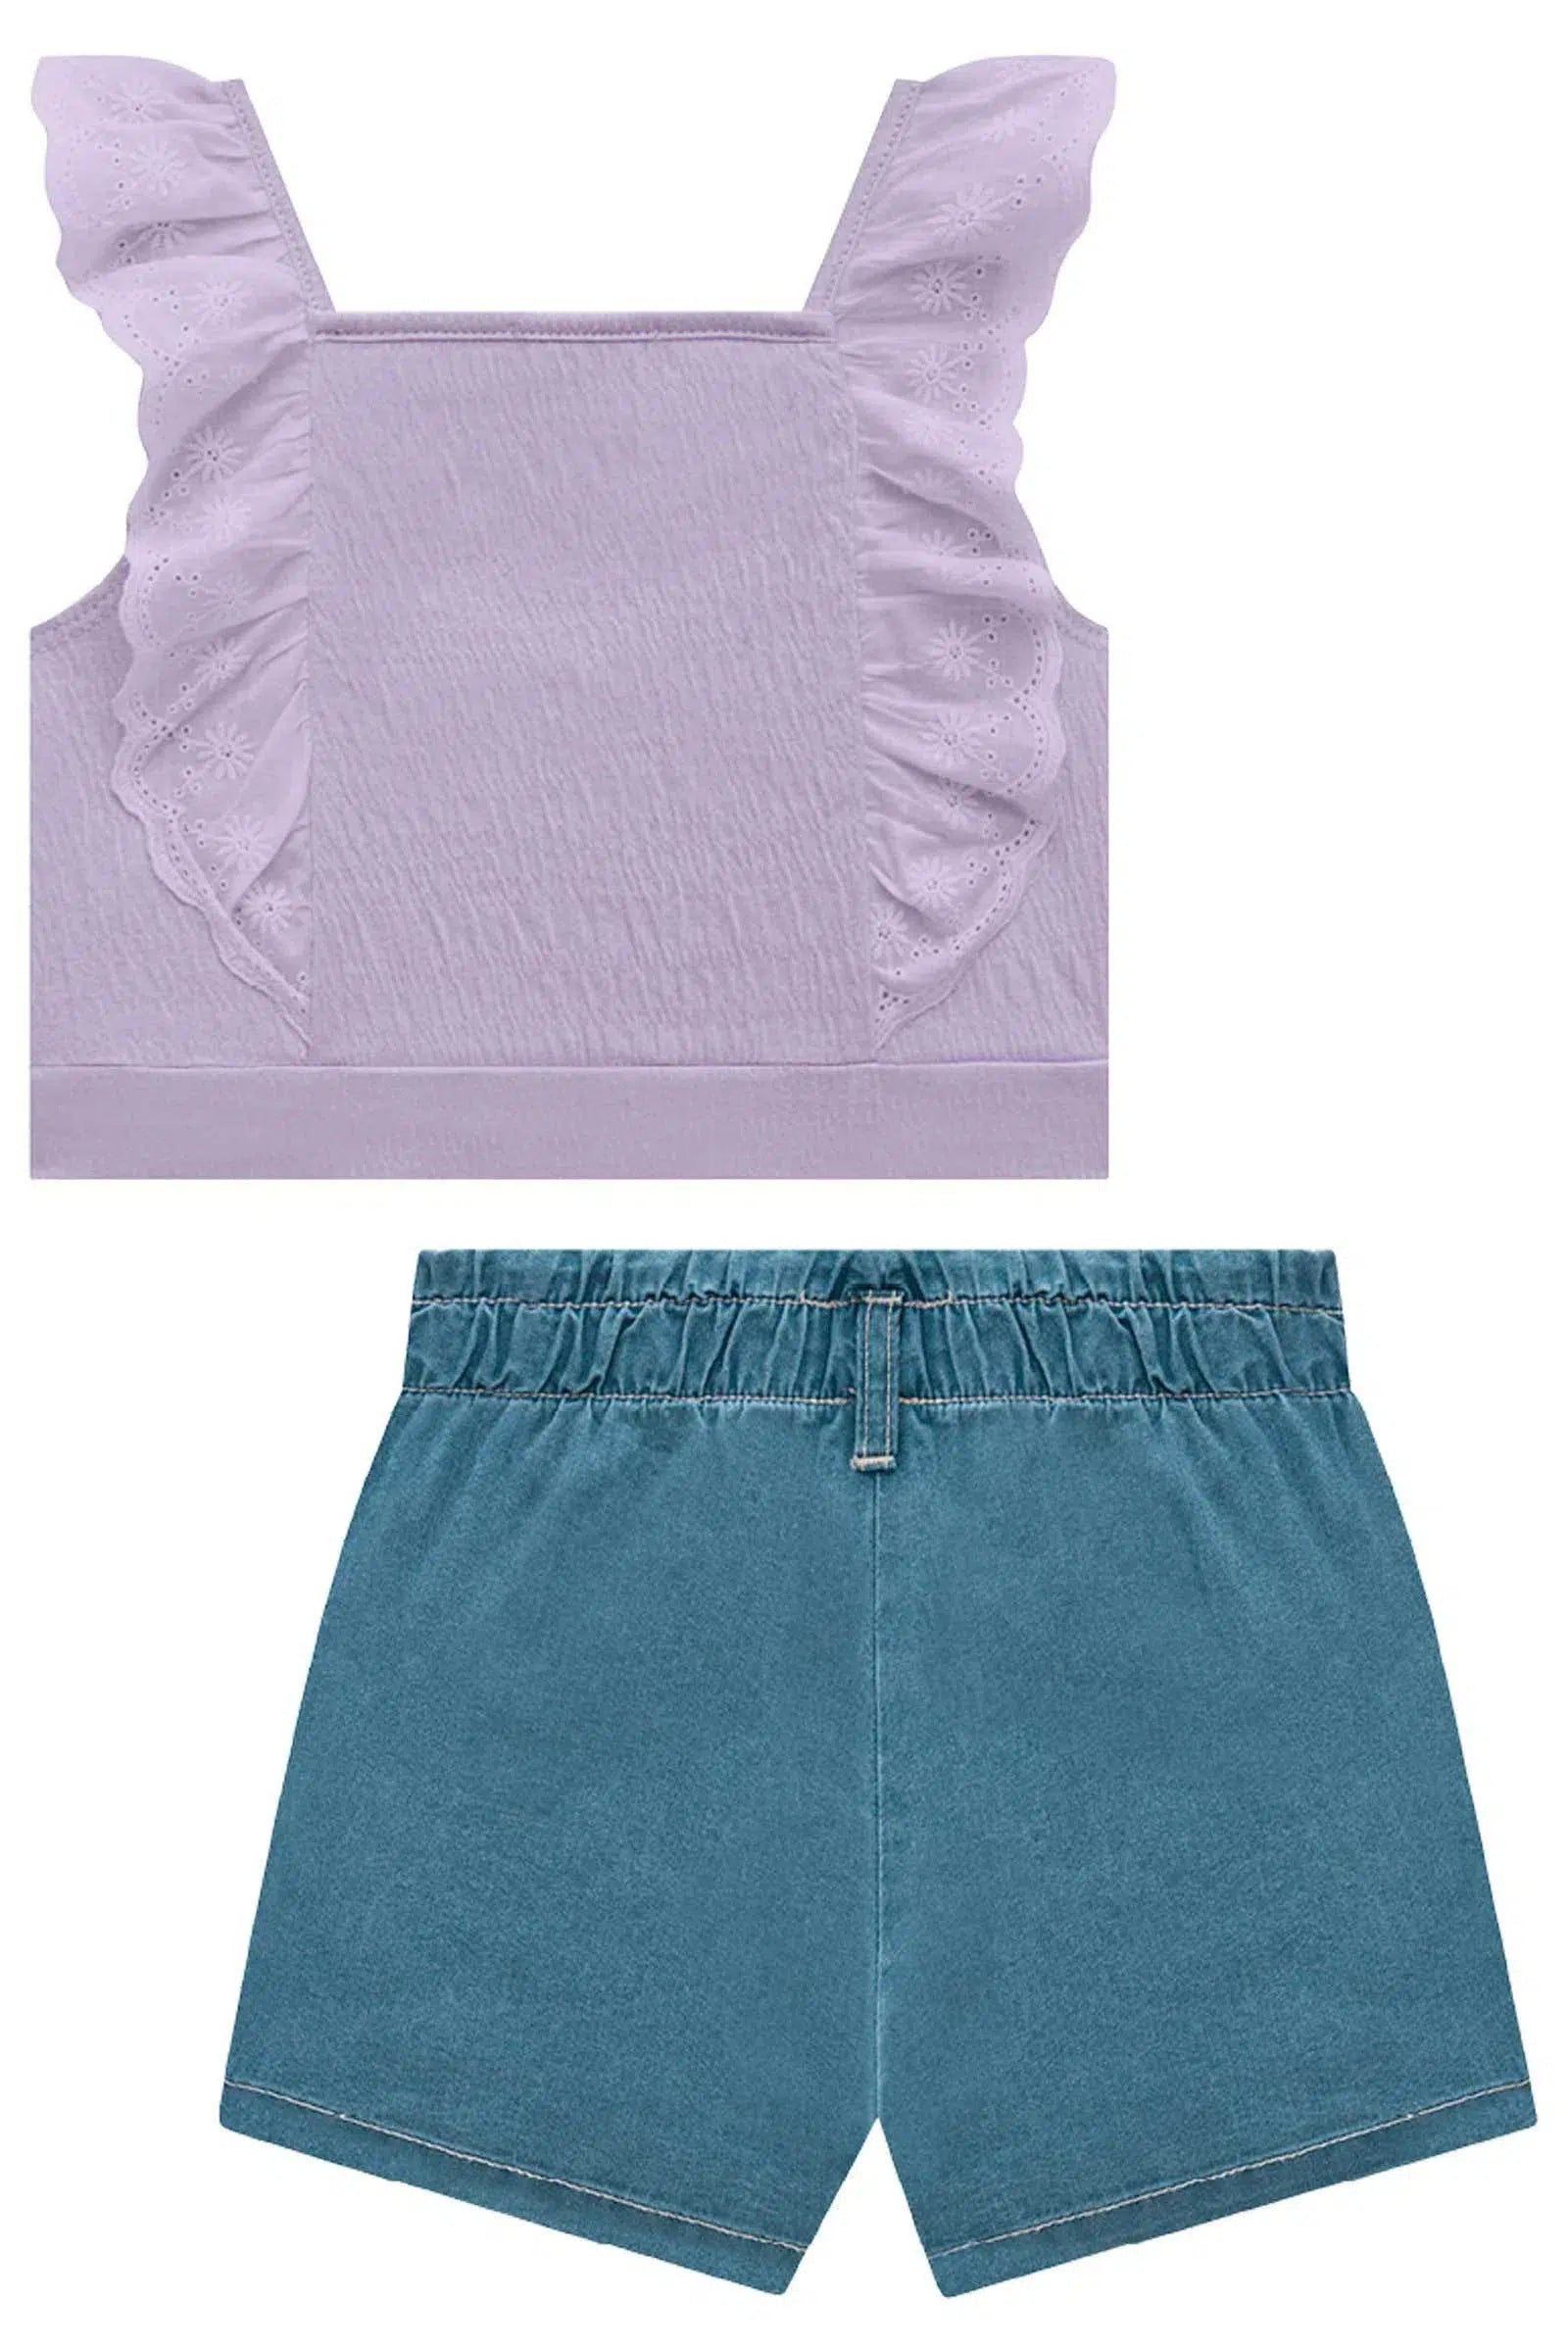 Conjunto de Blusa Cropped em Malha Elastic e Shorts Saia em Jeans Liz 72756 Kukiê